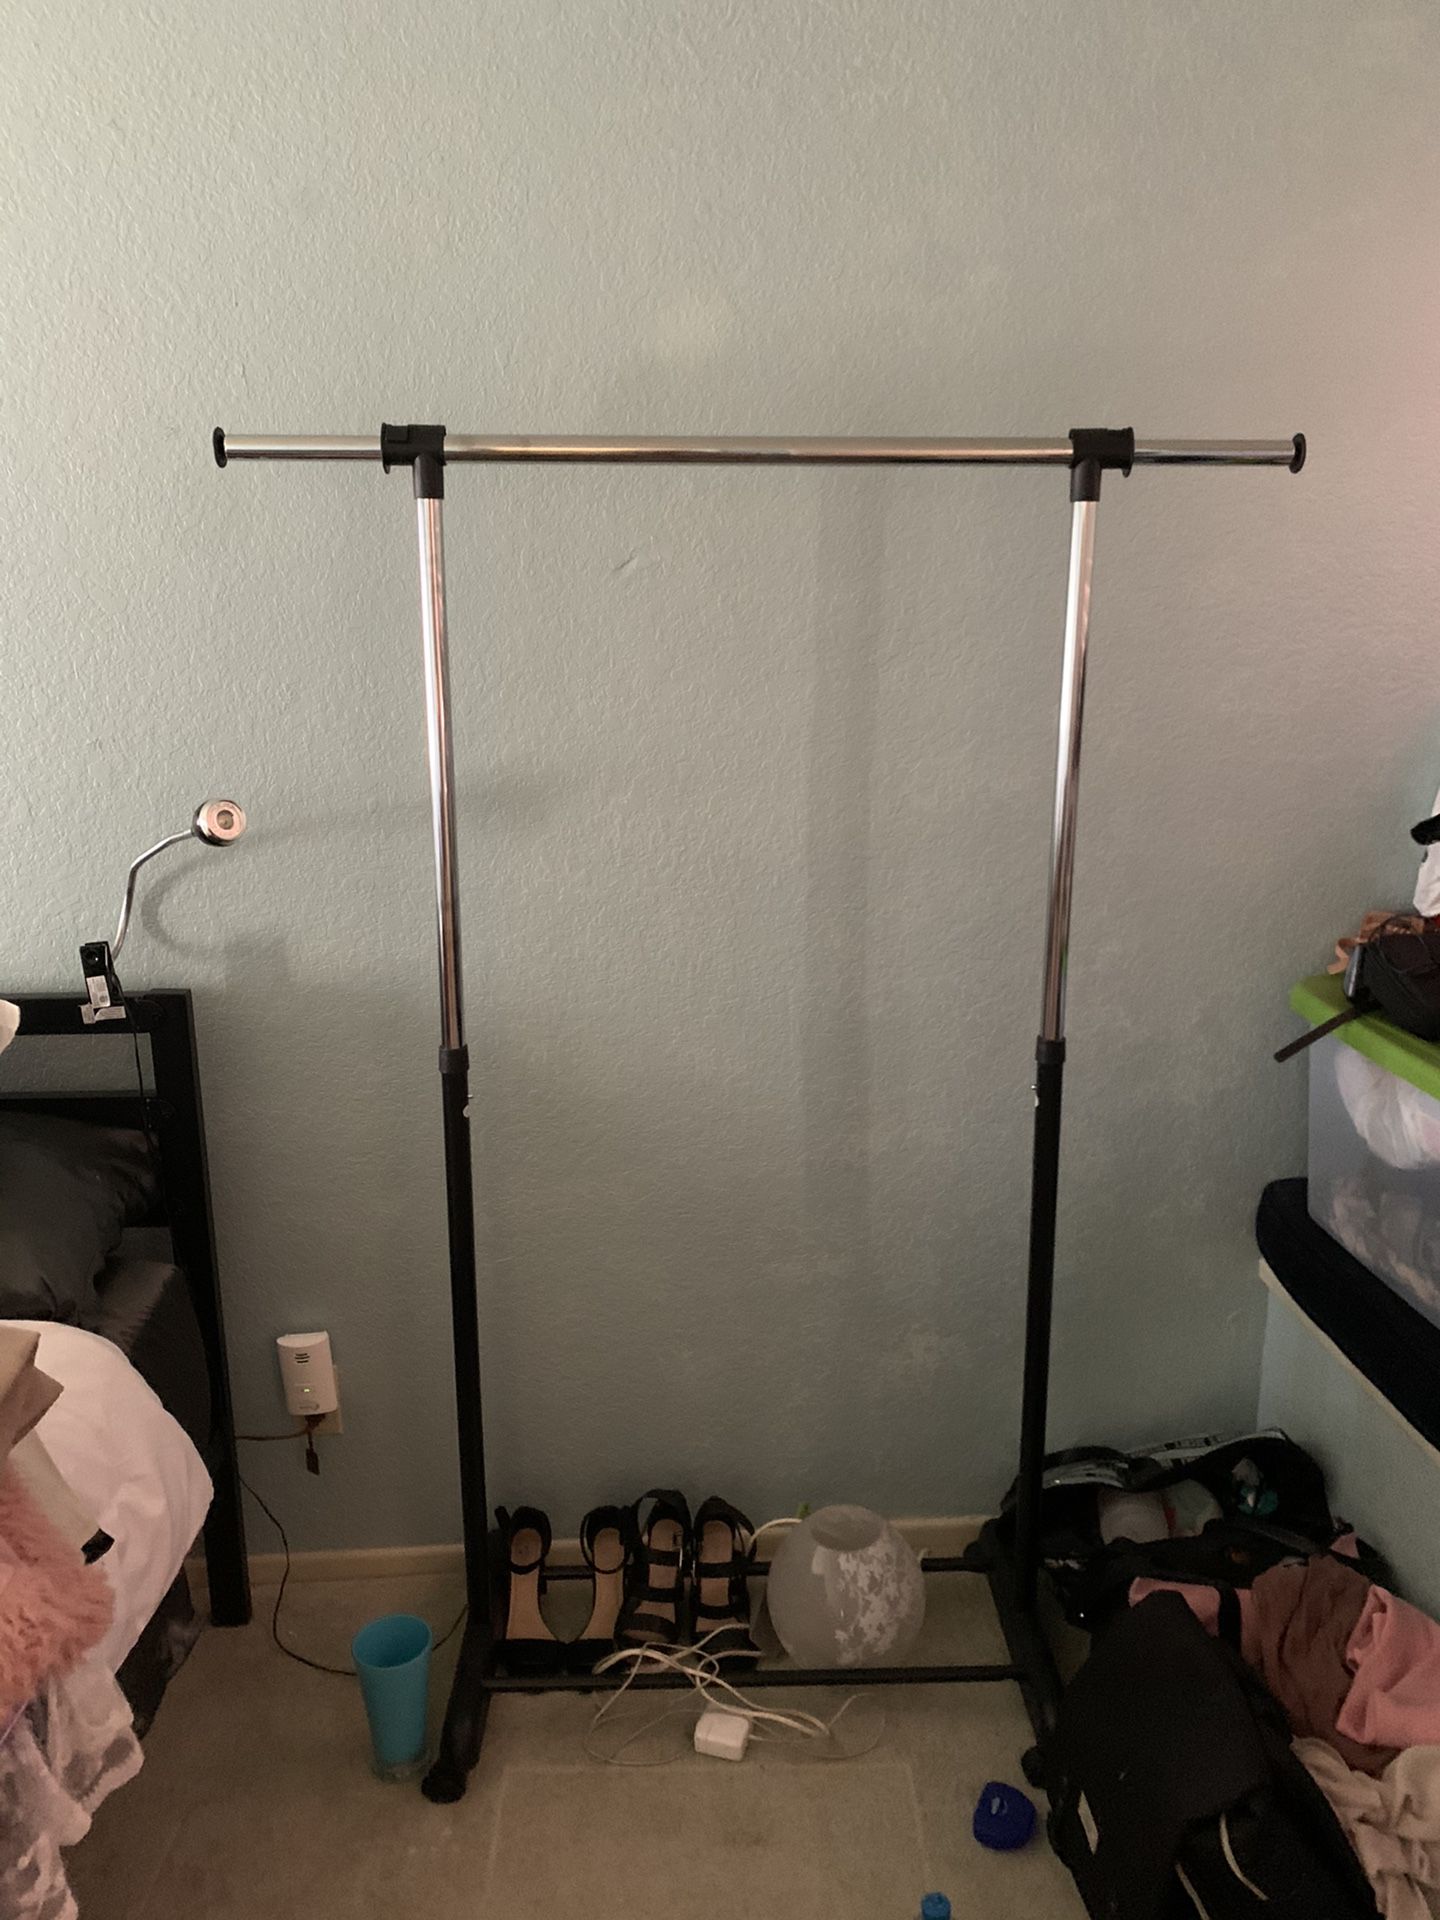 Closet/metal hanging organizer